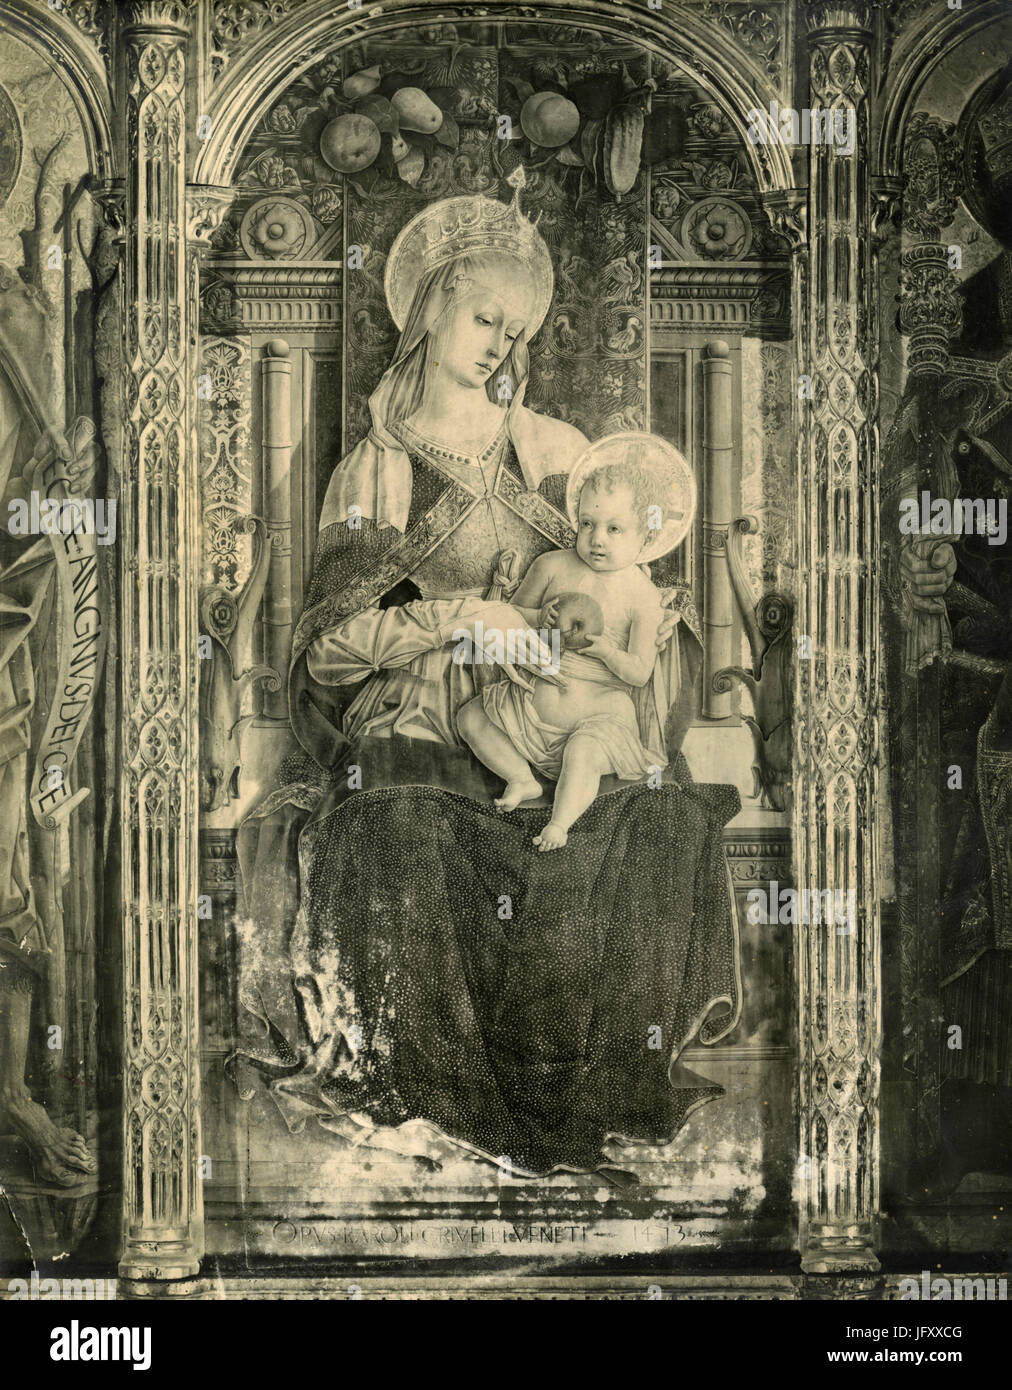 La Vierge et l'enfant, peinture de Carlo Crivelli, Ascoli Piceno, Italie Banque D'Images